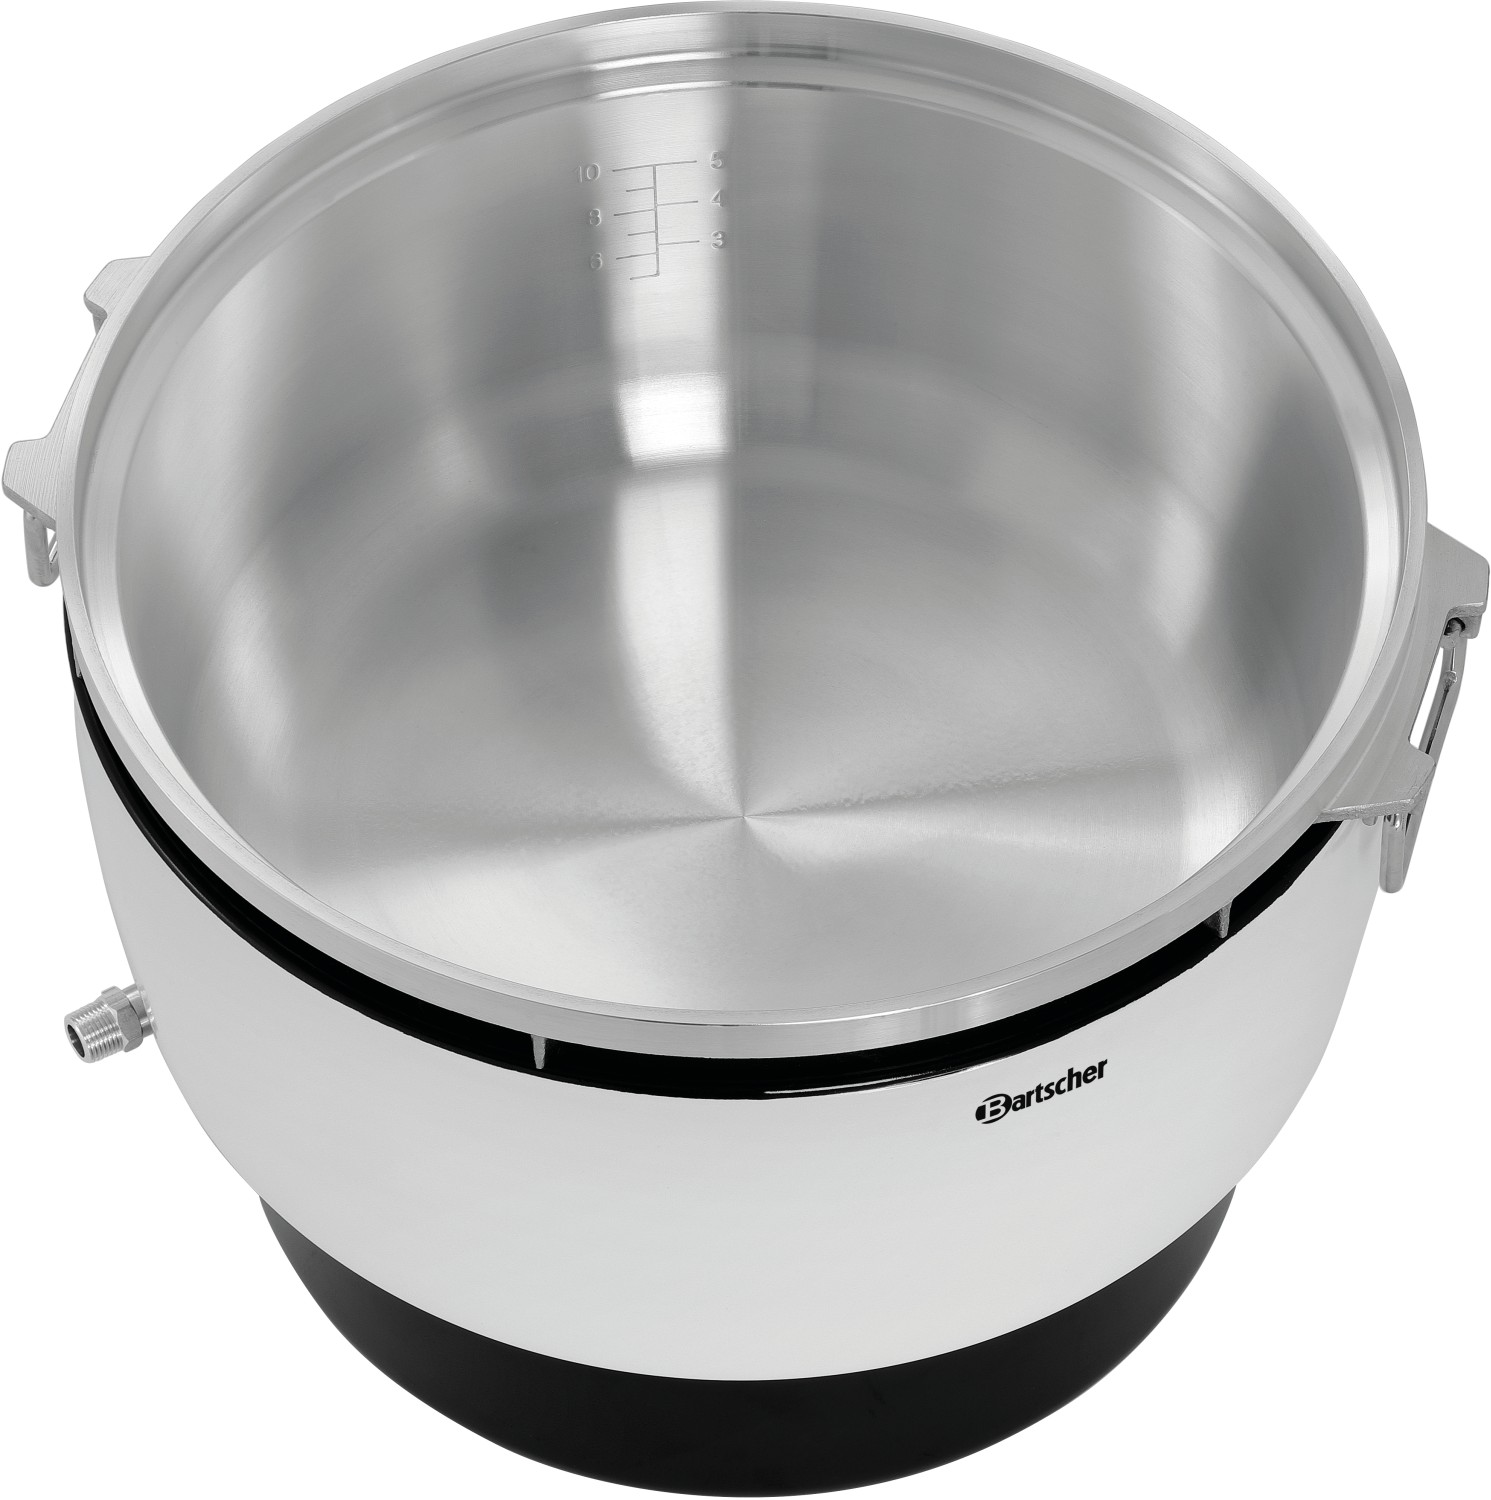  Bartscher Gas rice cooker 10L 